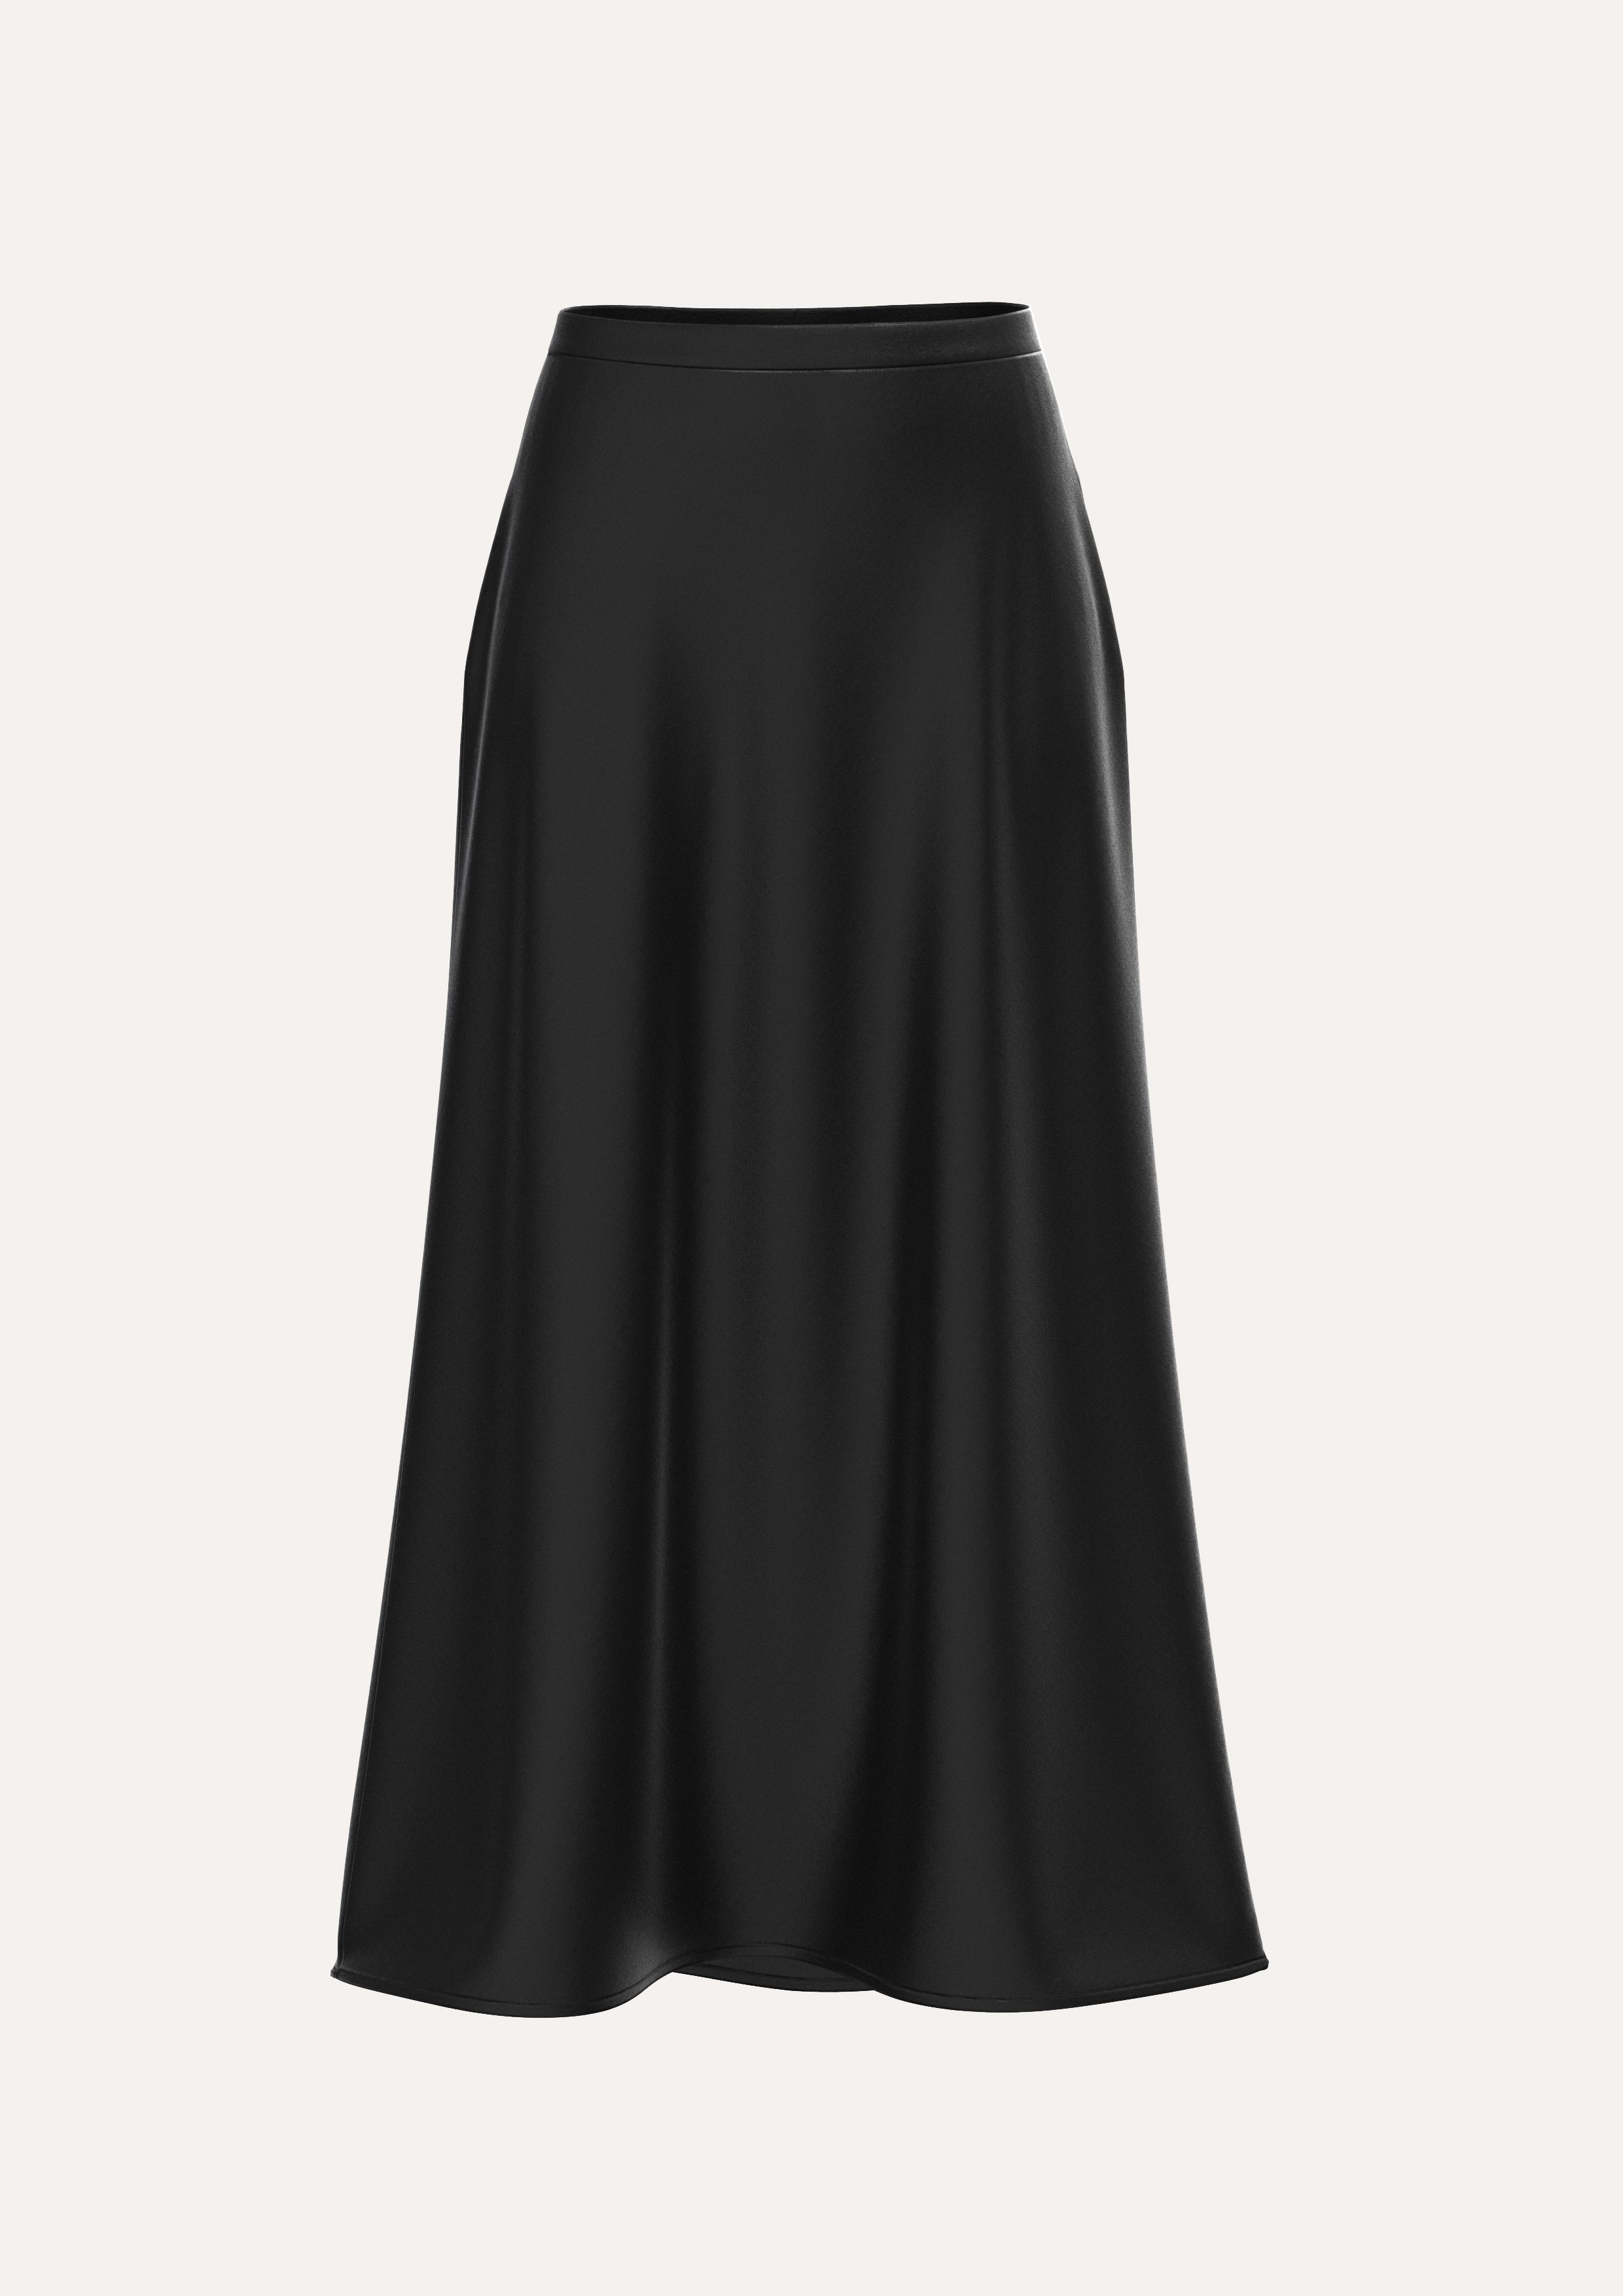 Midi skirt in black